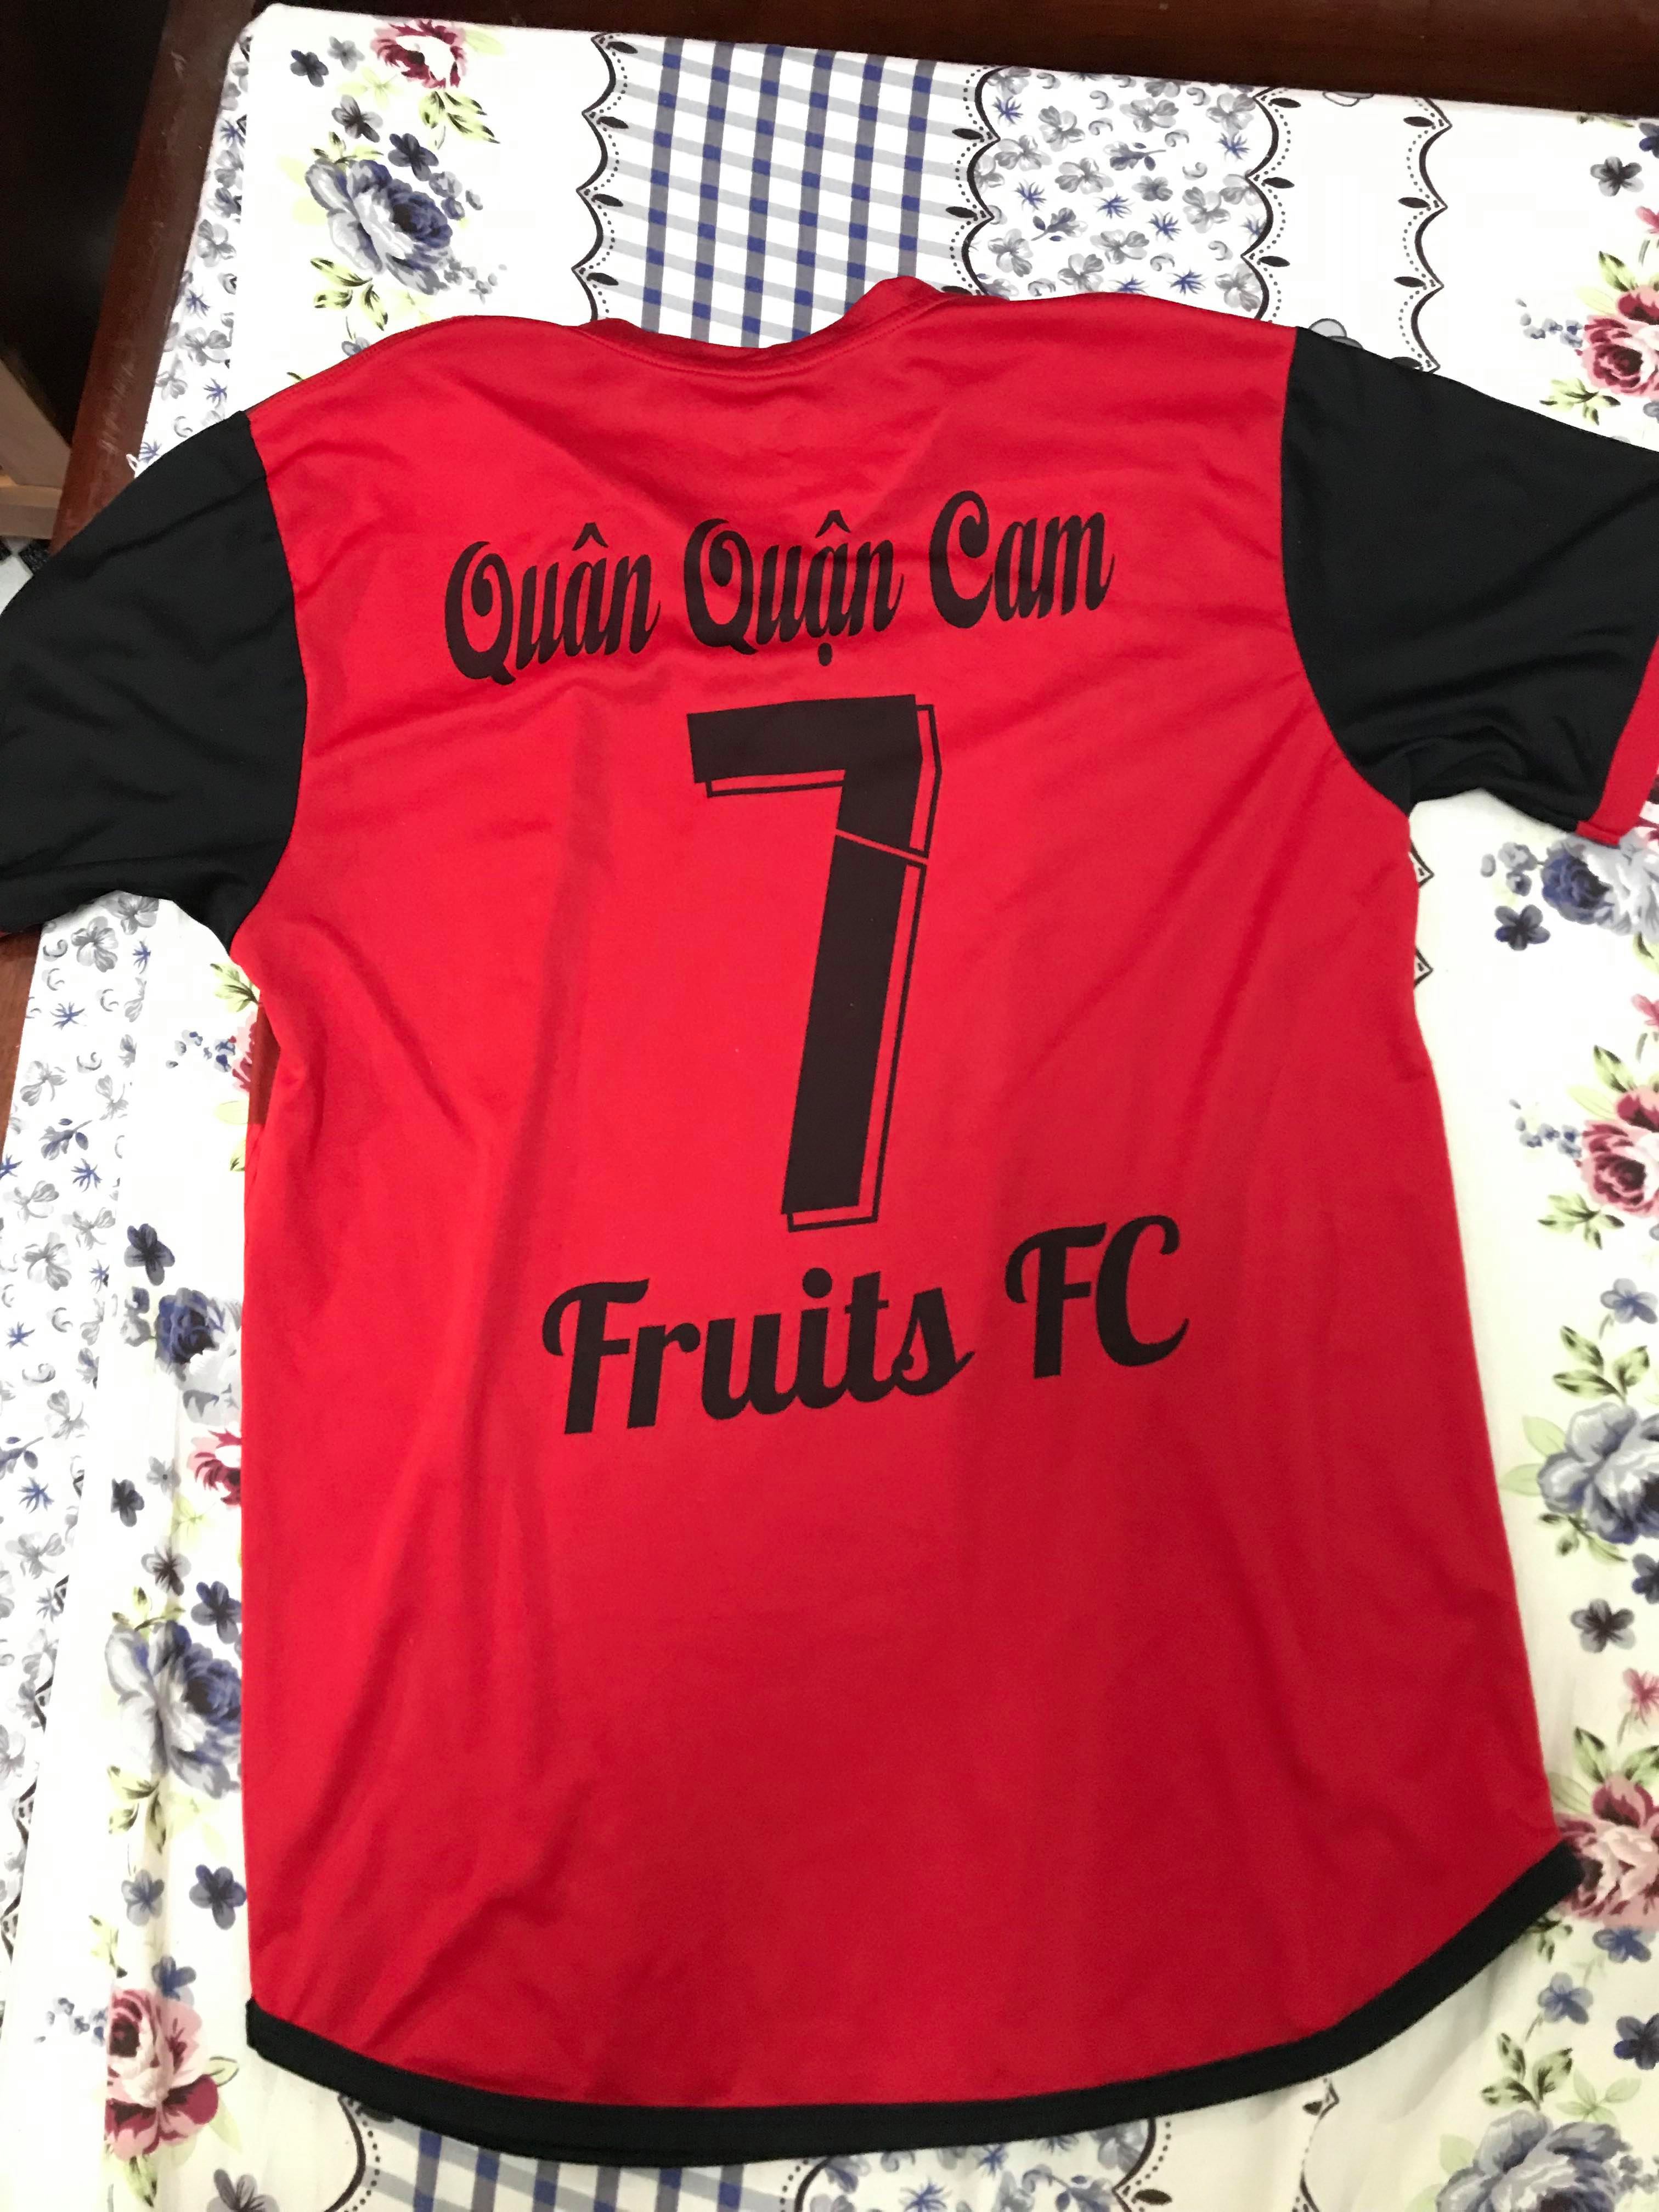 Fruits FC